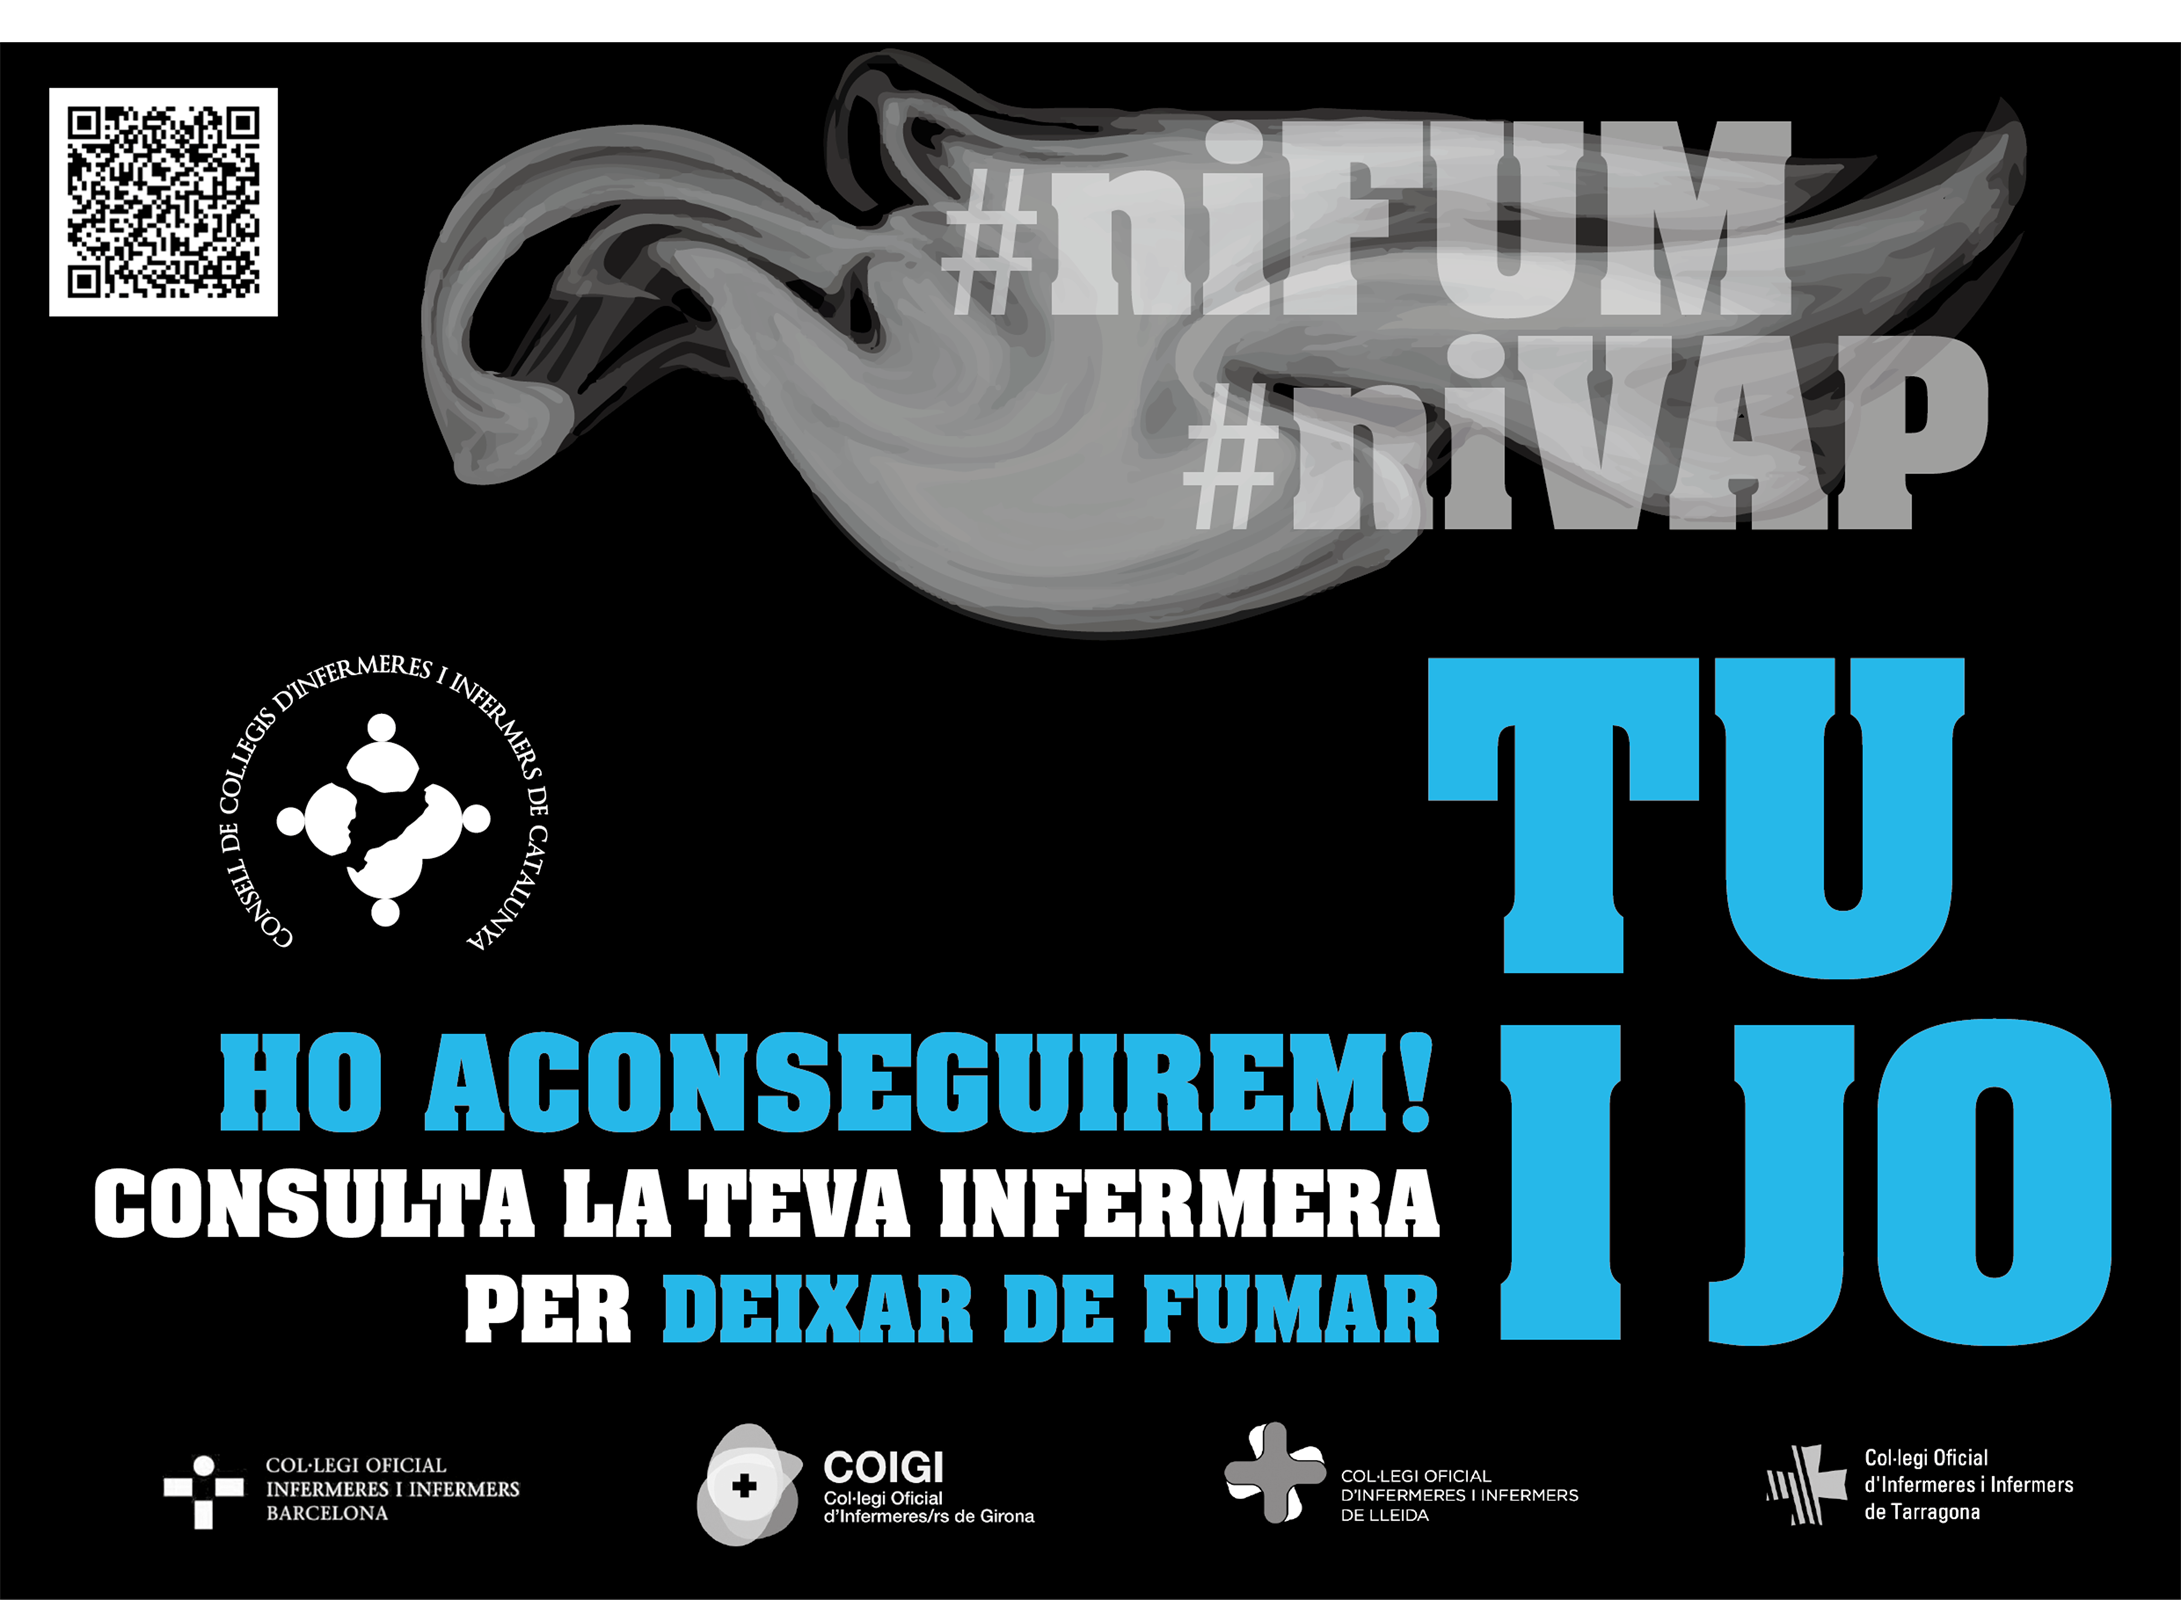 Les infermeres llancen la segona edició de la campanya #niFUM #niVAP perquè "deixar de fumar és possible"